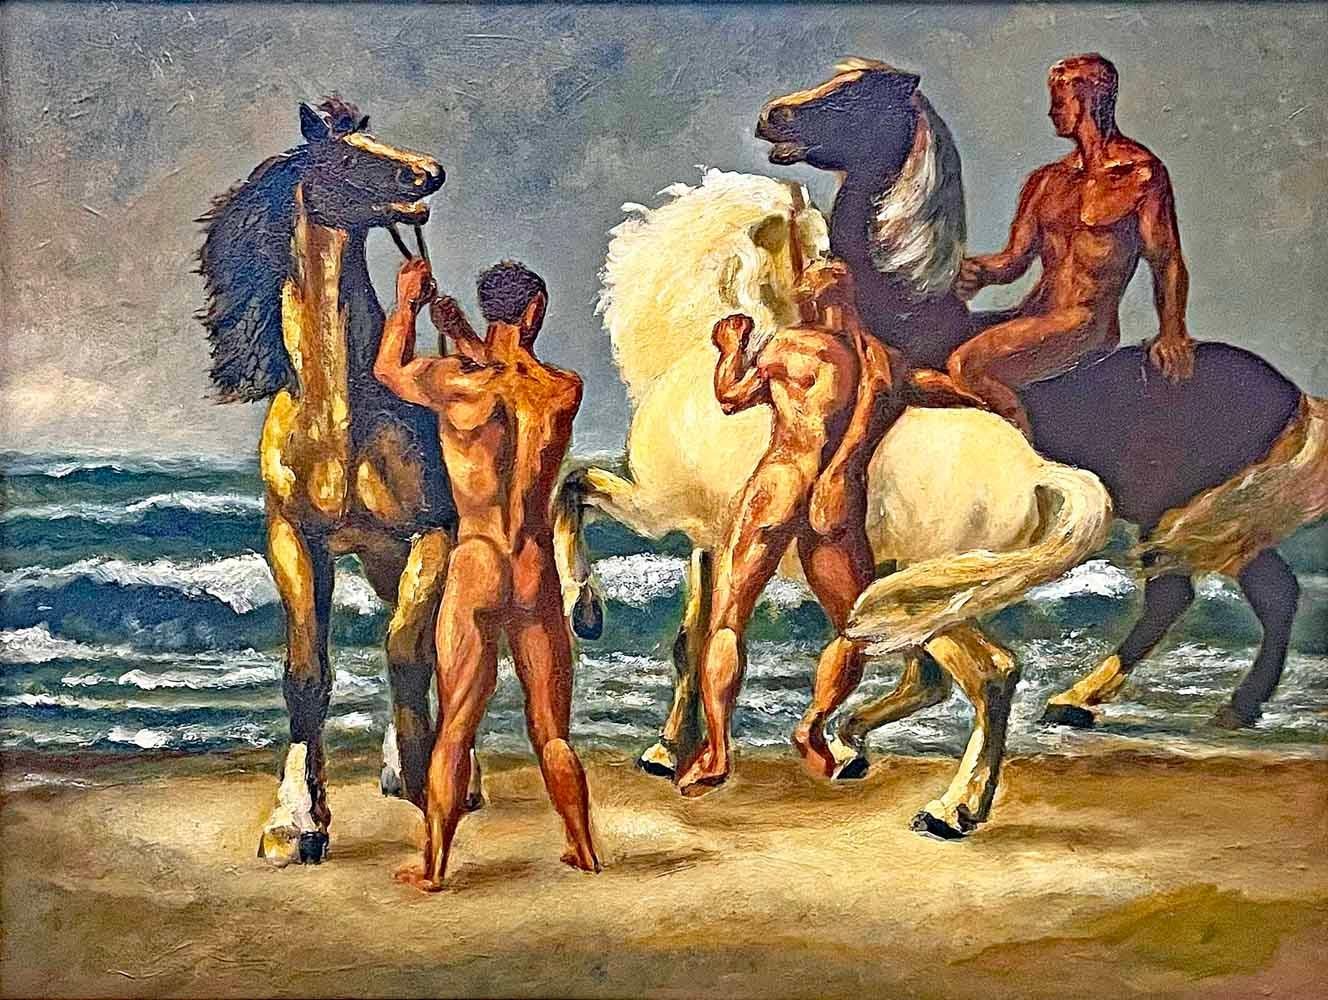 Poursuivant une tradition vieille de plusieurs décennies, Josef Pieper a peint une série de scènes de bord de mer avec de multiples figures masculines nues, chevauchant ou menant des chevaux le long du rivage, leurs corps forts et leur teint